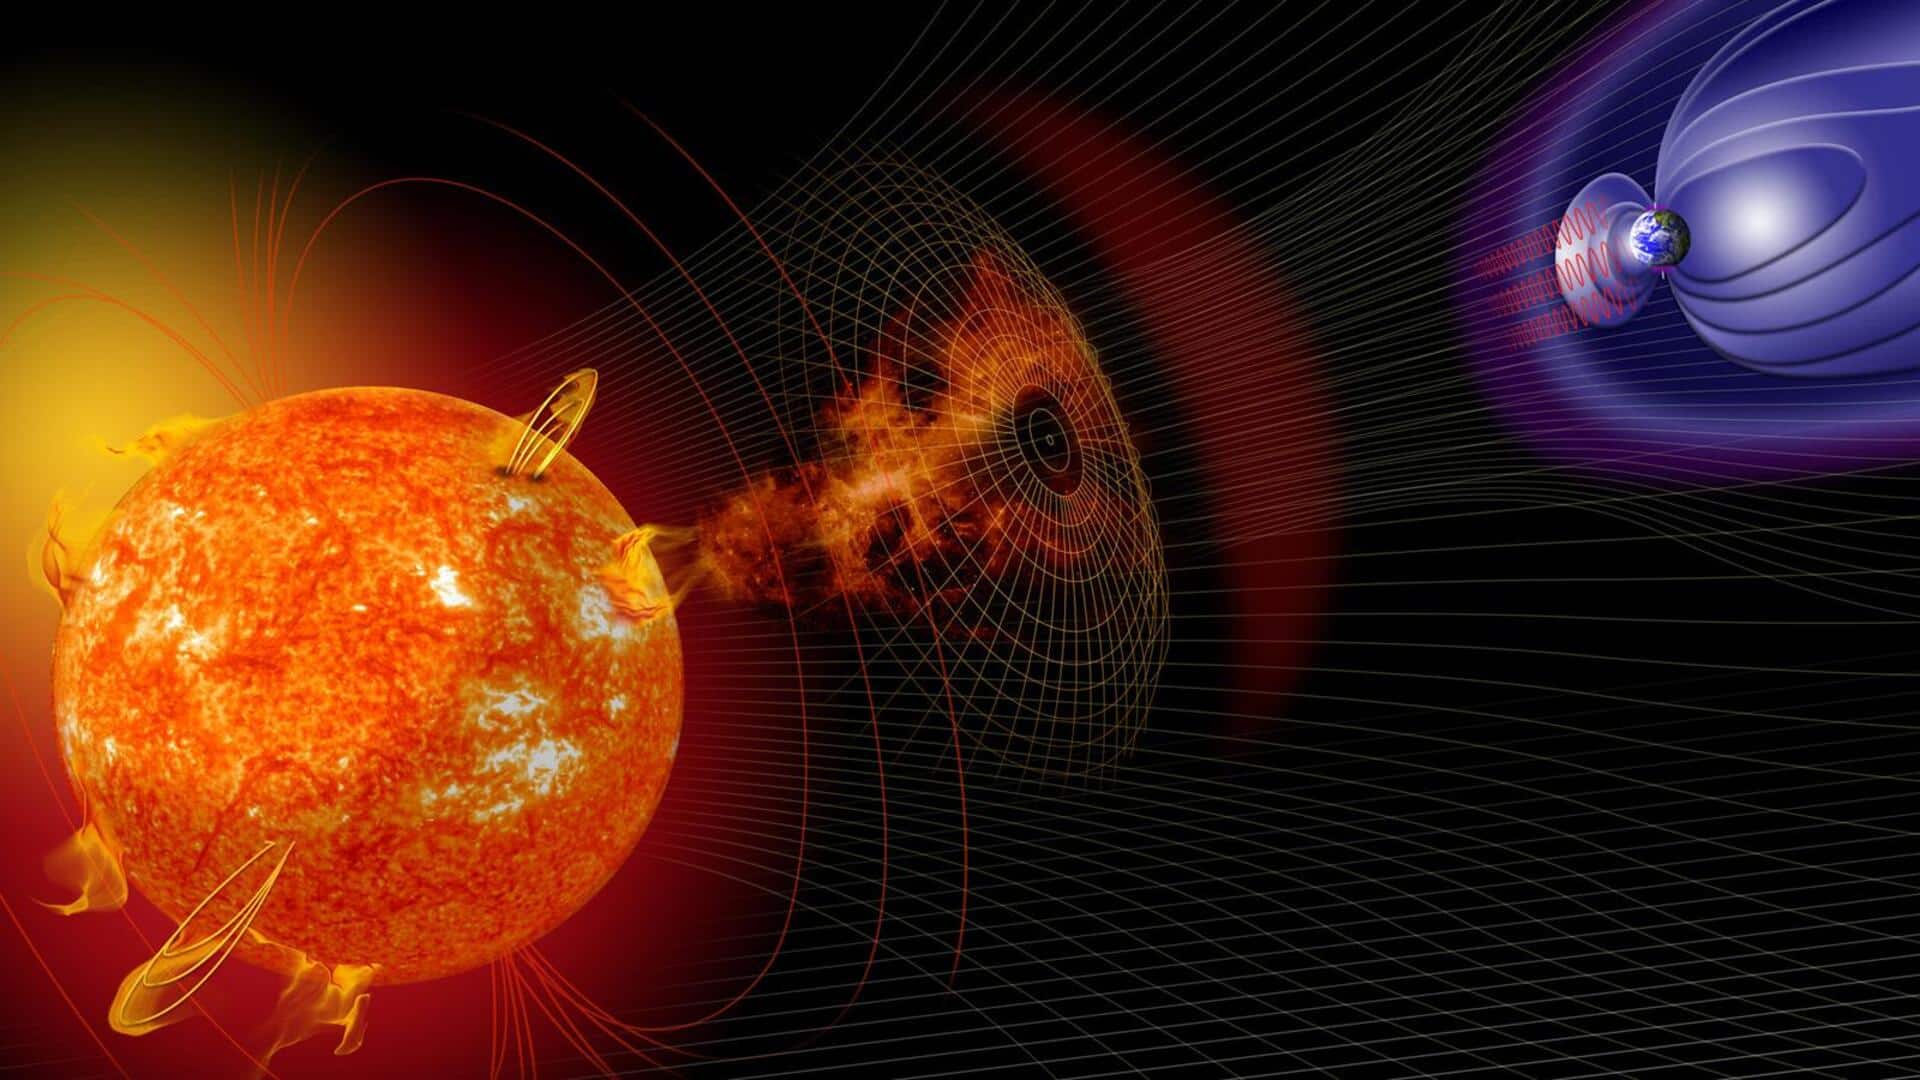 सनस्पॉट में विस्फोट से X-श्रेणी सोलर फ्लेयर हो सकता है उत्पन्न, जानें क्या है खतरा